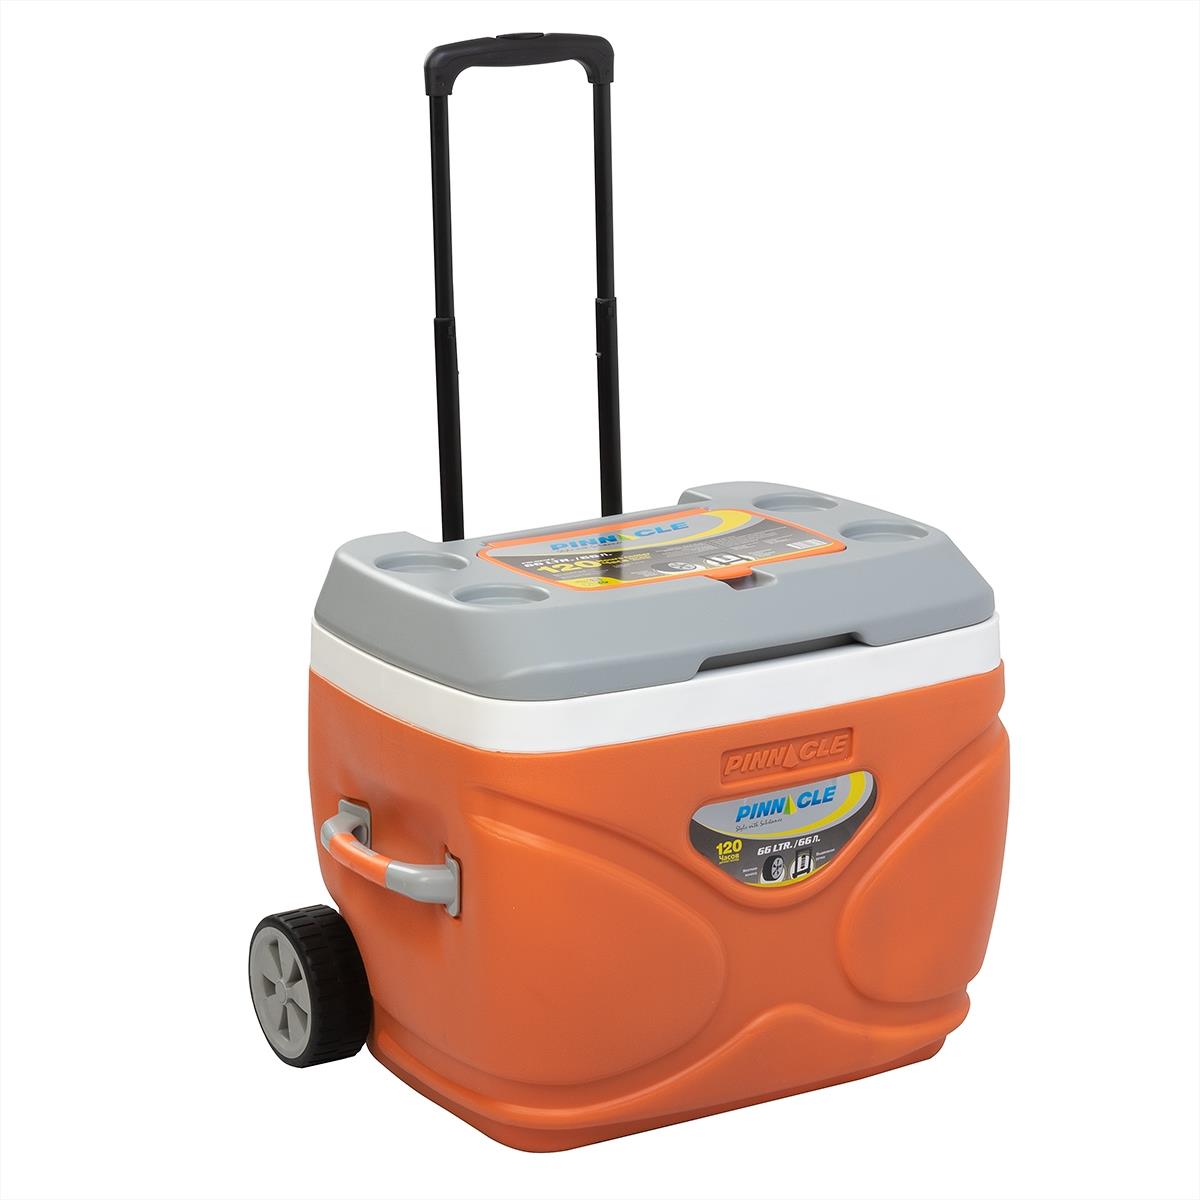 контейнер для еды locknlock для микроволновой печи 1 1 л оранжевый Изотермический контейнер на колесах PRUDENCE 66 л PINNACLE